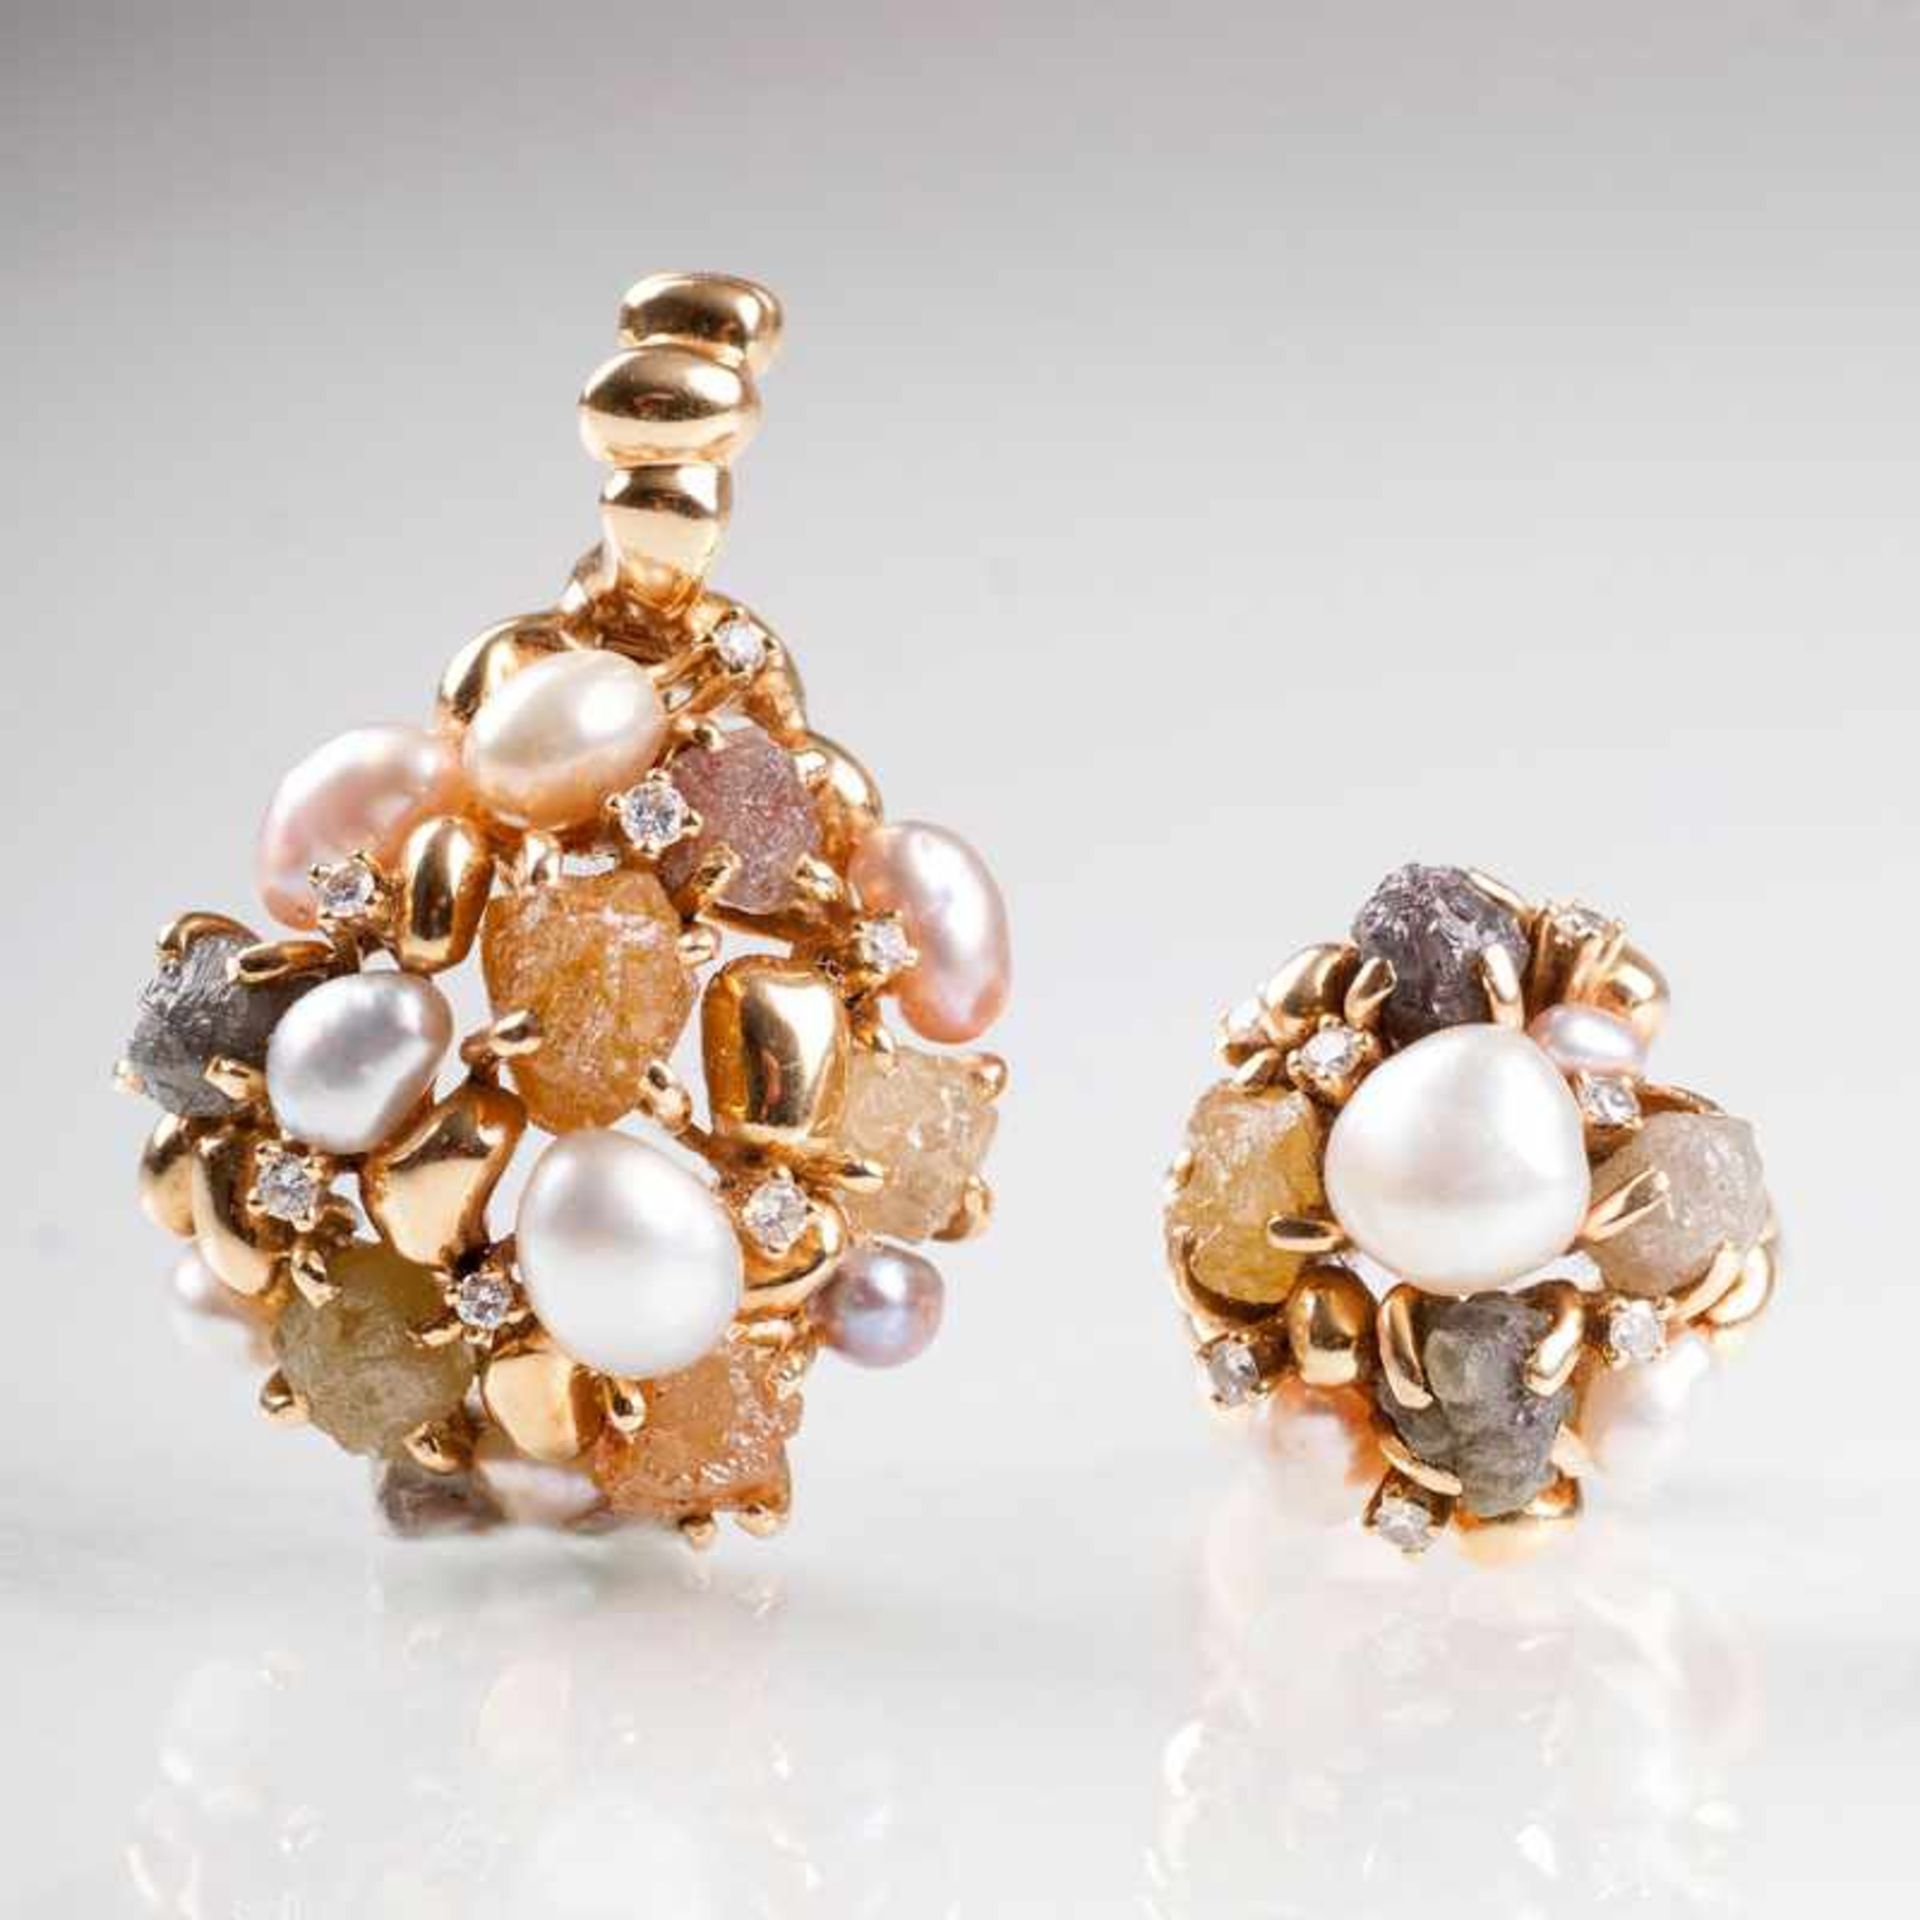 Moderner Perlen-Rohdiamant-Ring mit passendem Anhänger von Juwelier Bauer 18 kt. GG, gest., MZ: '